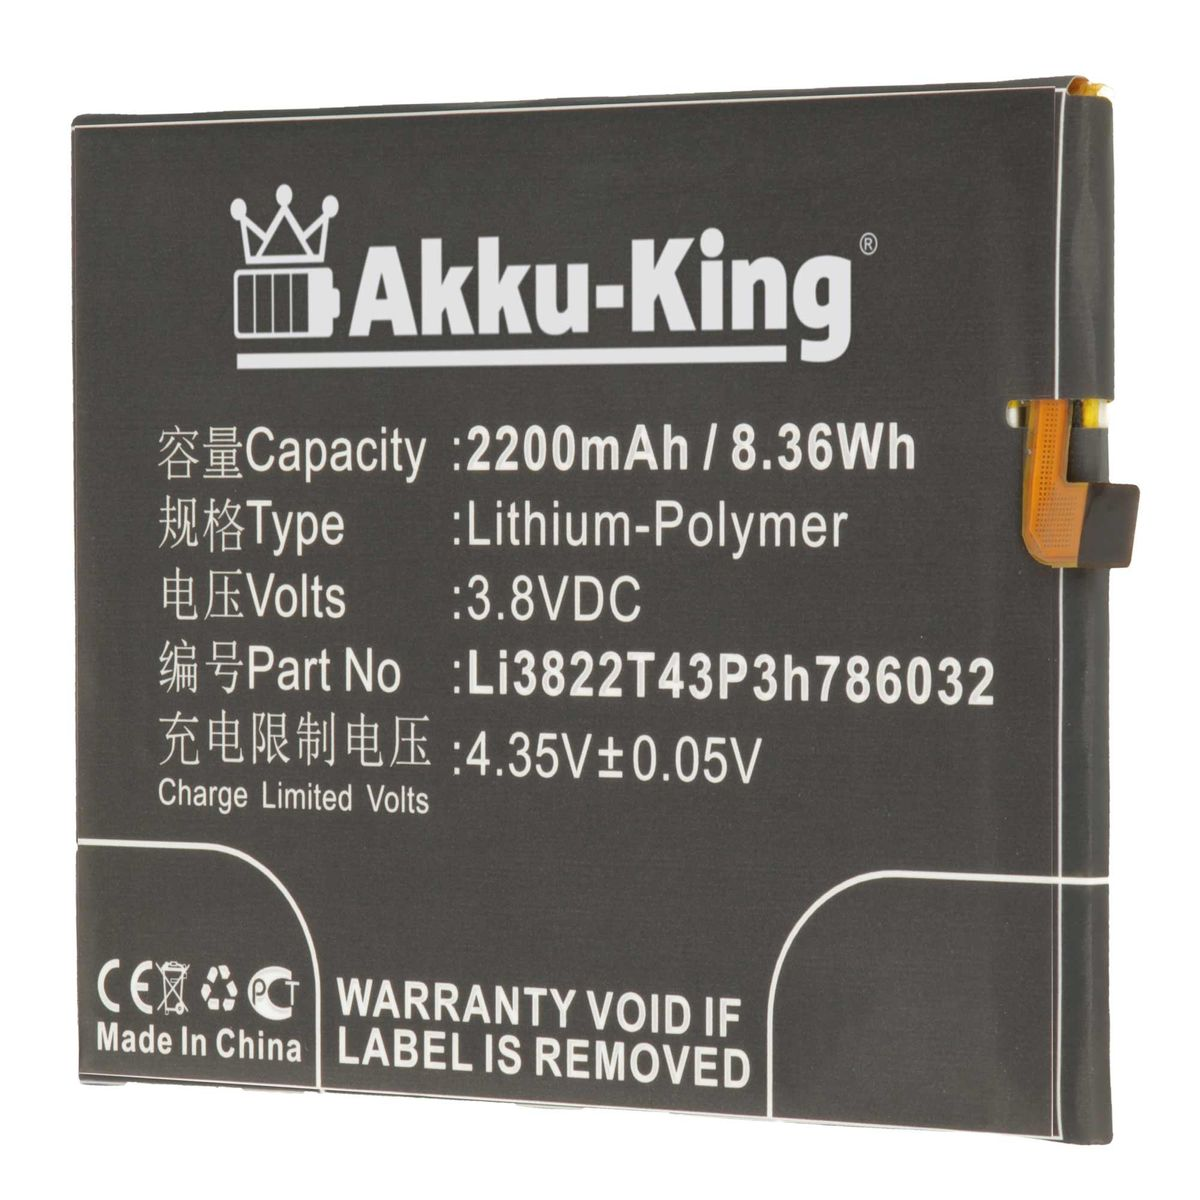 3.8 Li-Polymer Handy-Akku, 2200mAh kompatibel Li3822T43P3h786032 Akku Volt, mit AKKU-KING ZTE